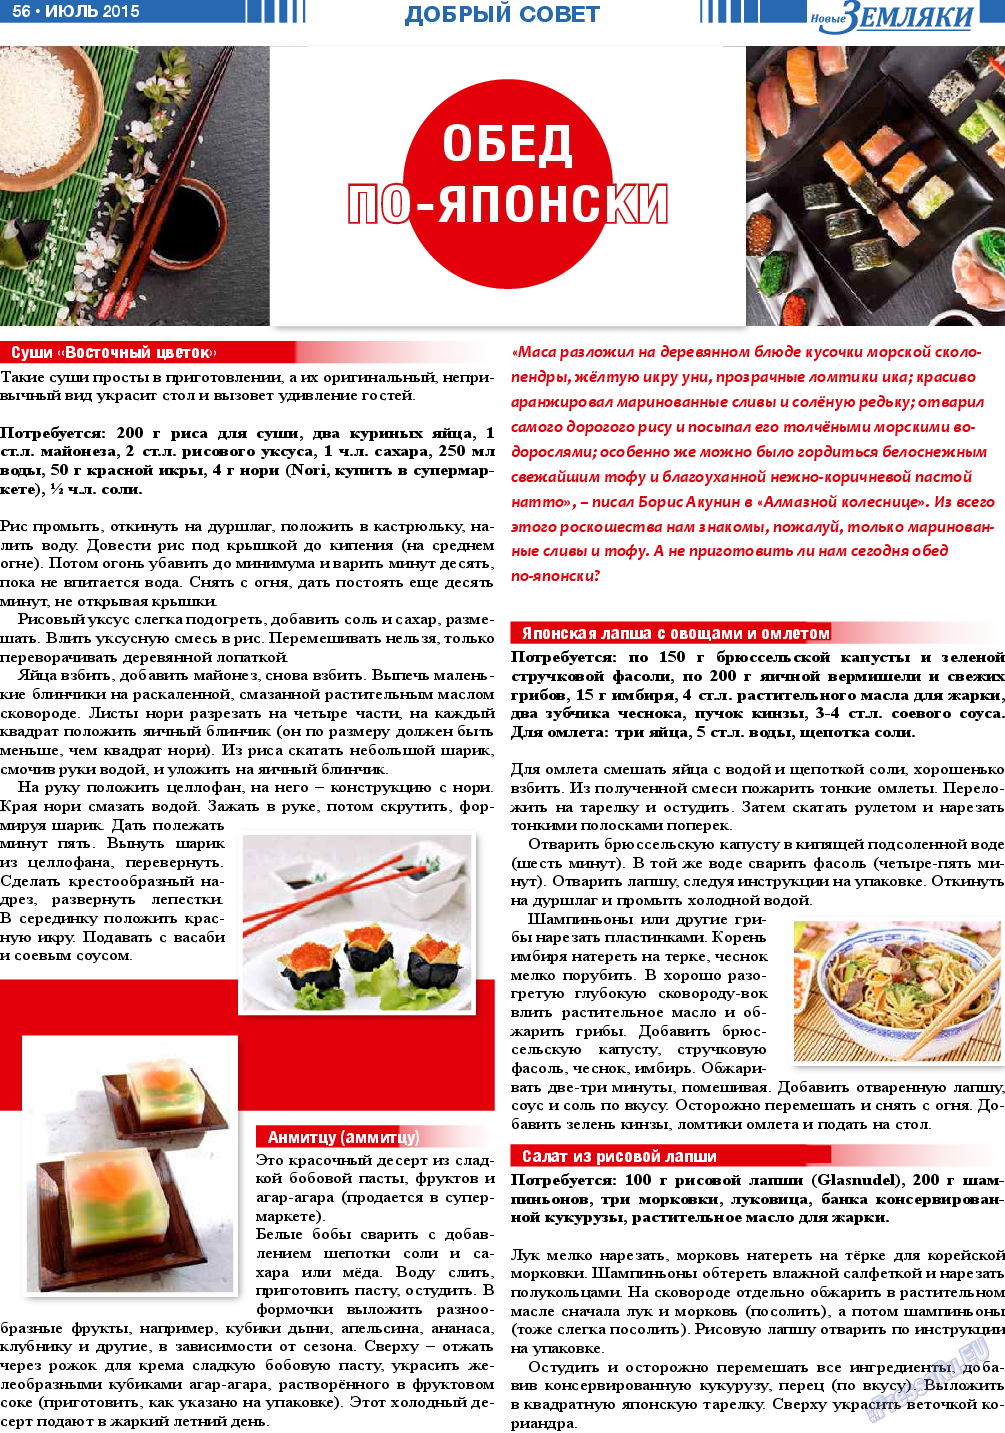 Новые Земляки, газета. 2015 №7 стр.56